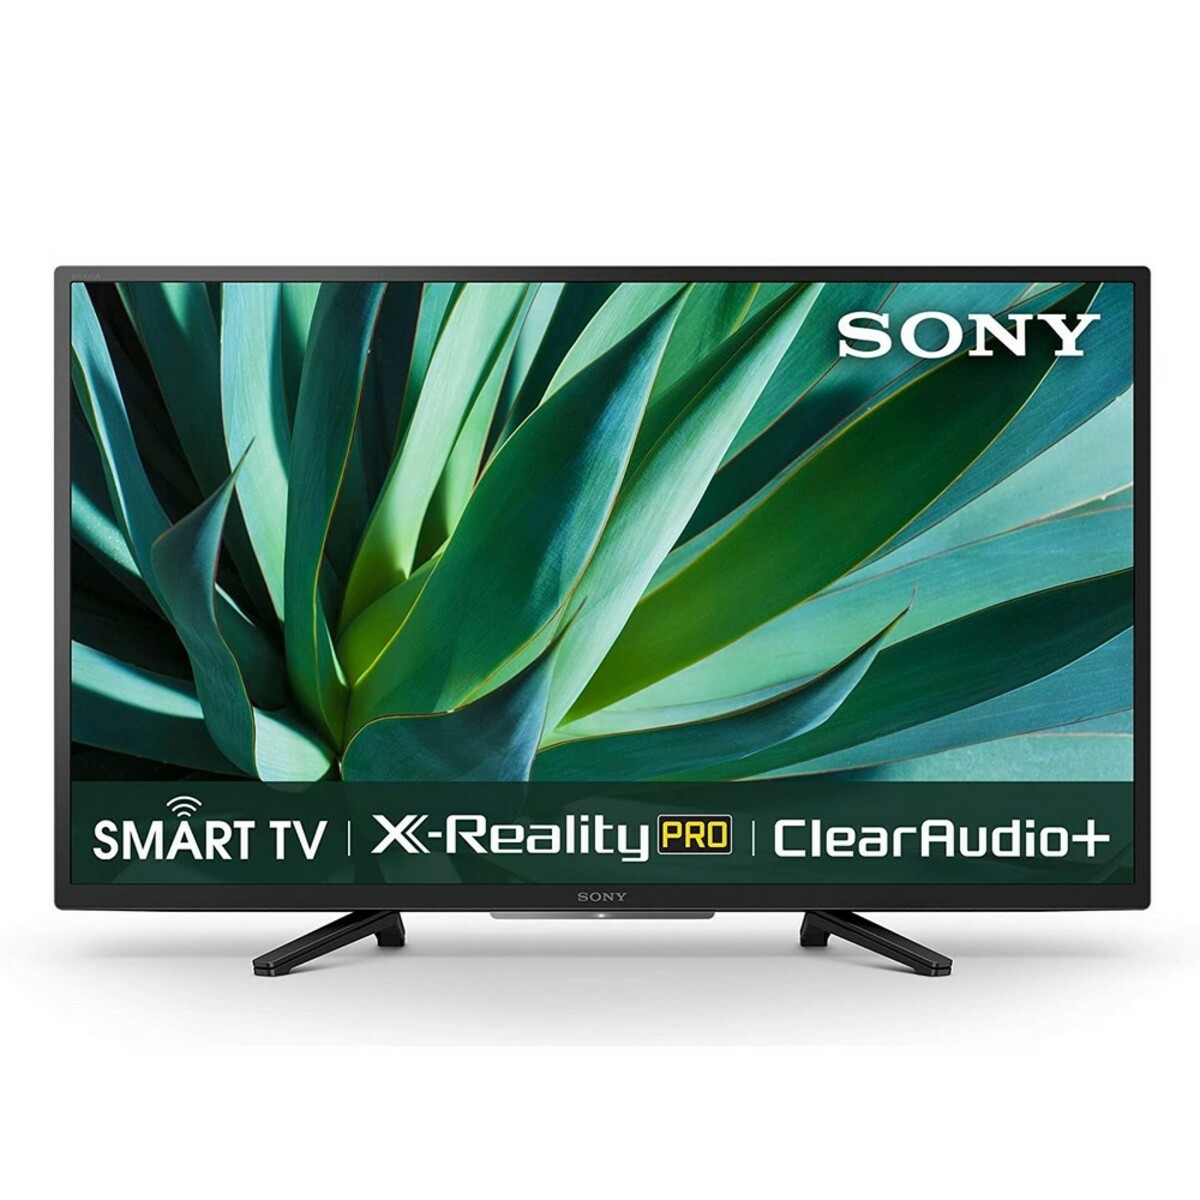 Sony HD LED Smart TV KDL-32W6100 32"